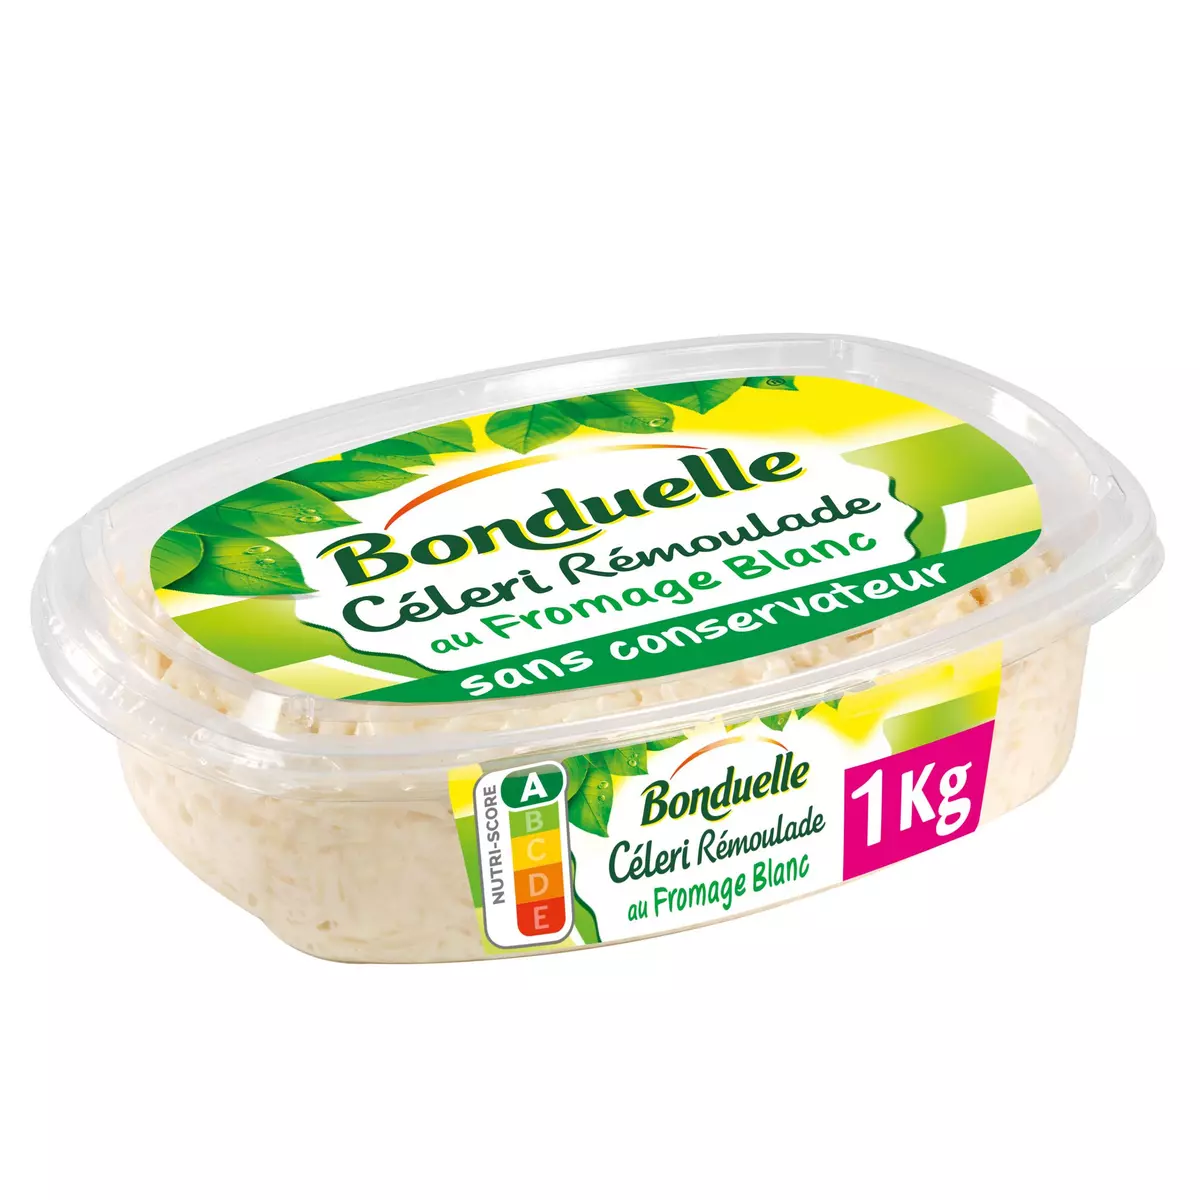 BONDUELLE Céleri rémoulade au fromage banc 1kg